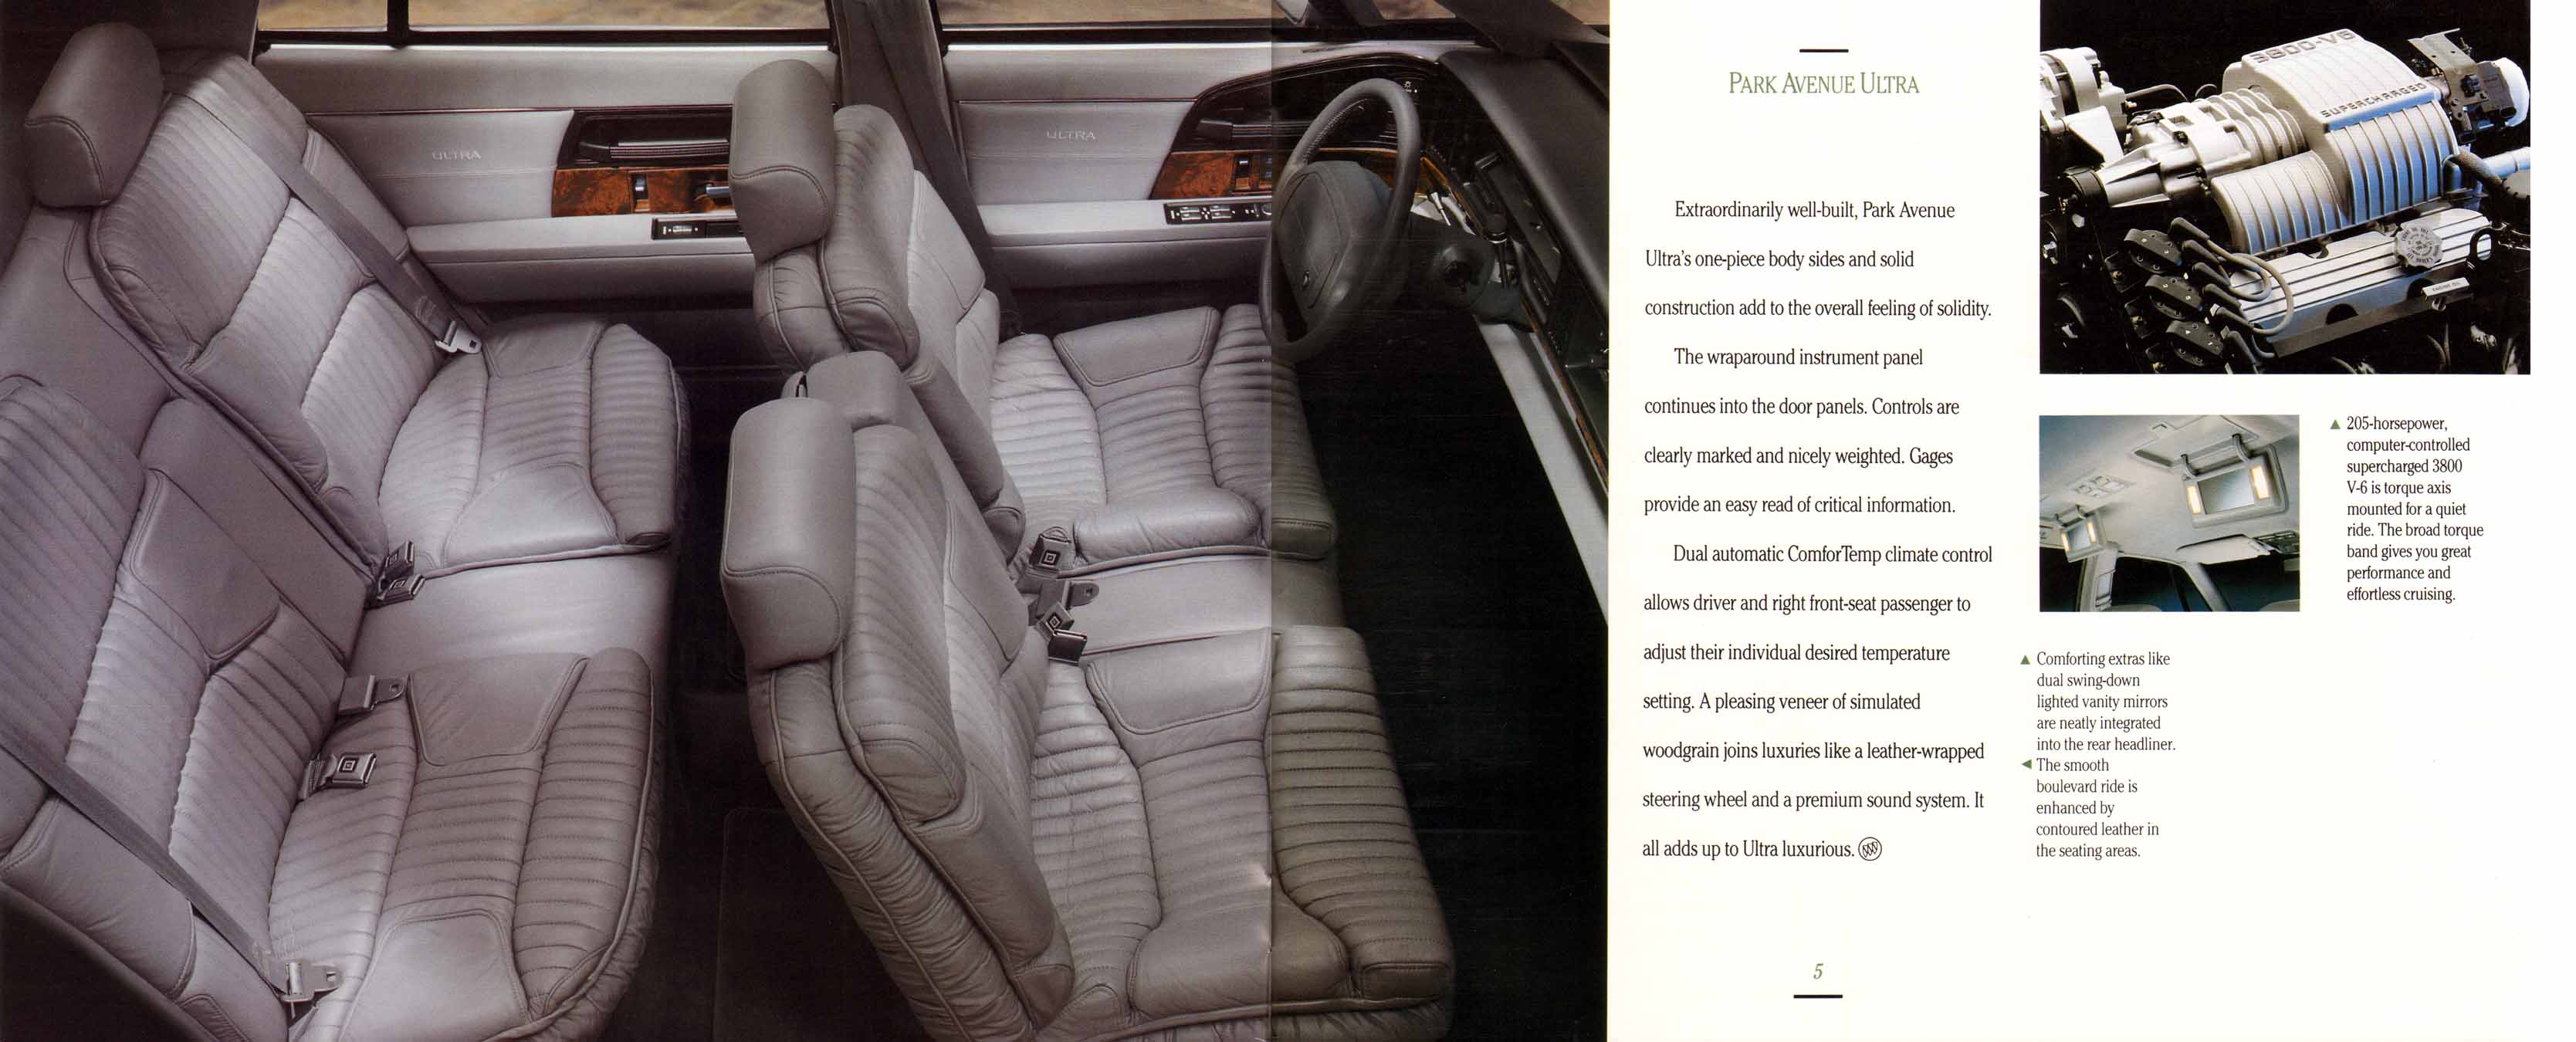 1992 Buick Full Line Prestige-04-05